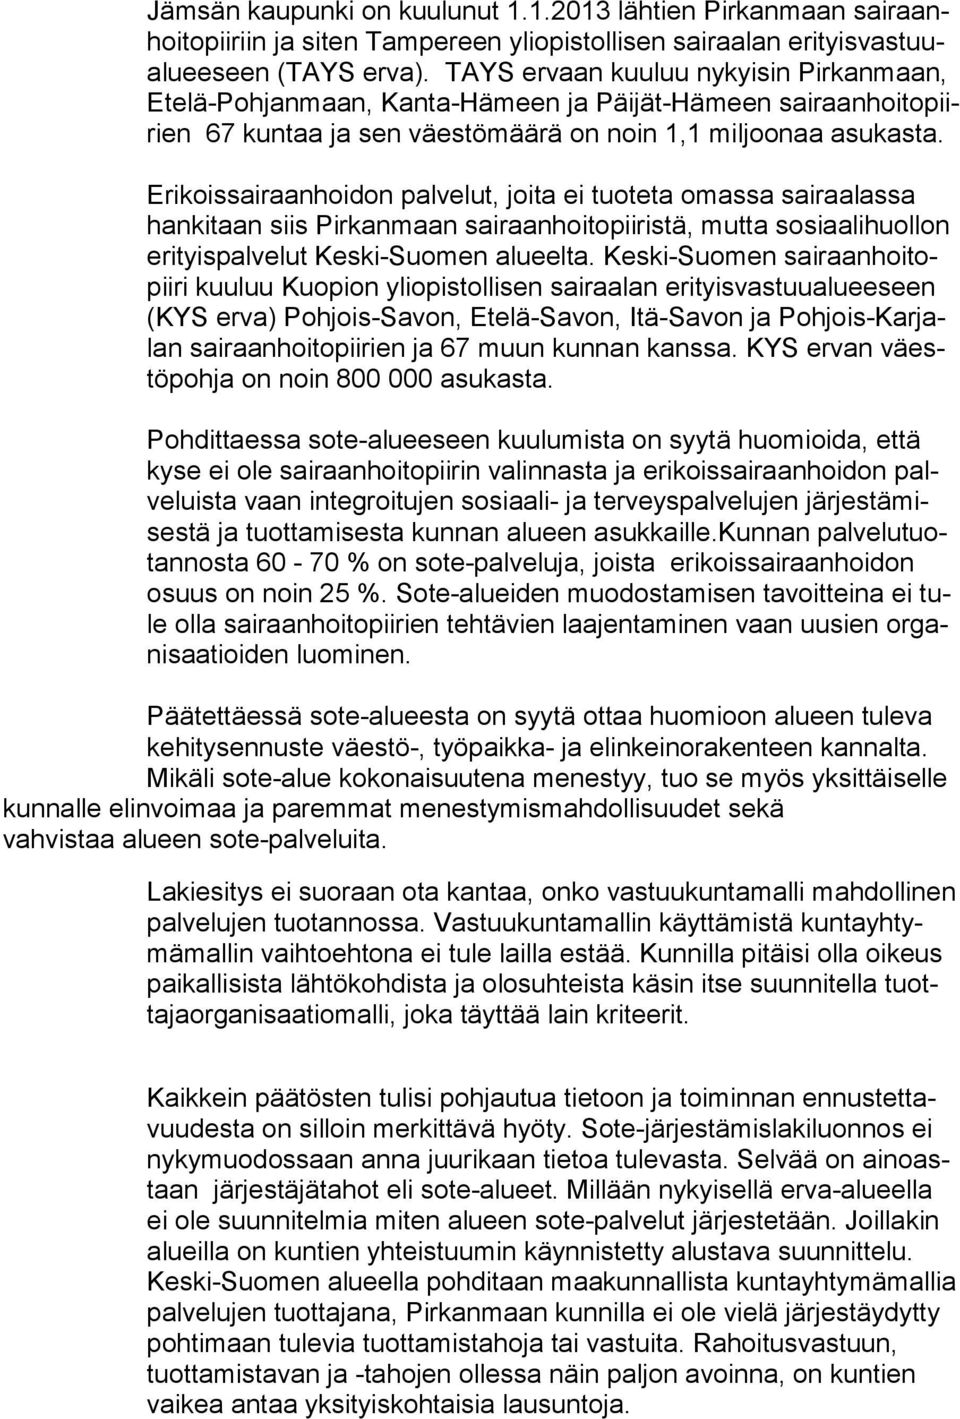 Erikoissairaanhoidon palvelut, joita ei tuoteta omassa sairaalassa han ki taan siis Pirkanmaan sairaanhoitopiiristä, mutta sosiaalihuollon eri tyis pal ve lut Keski-Suomen alueelta.